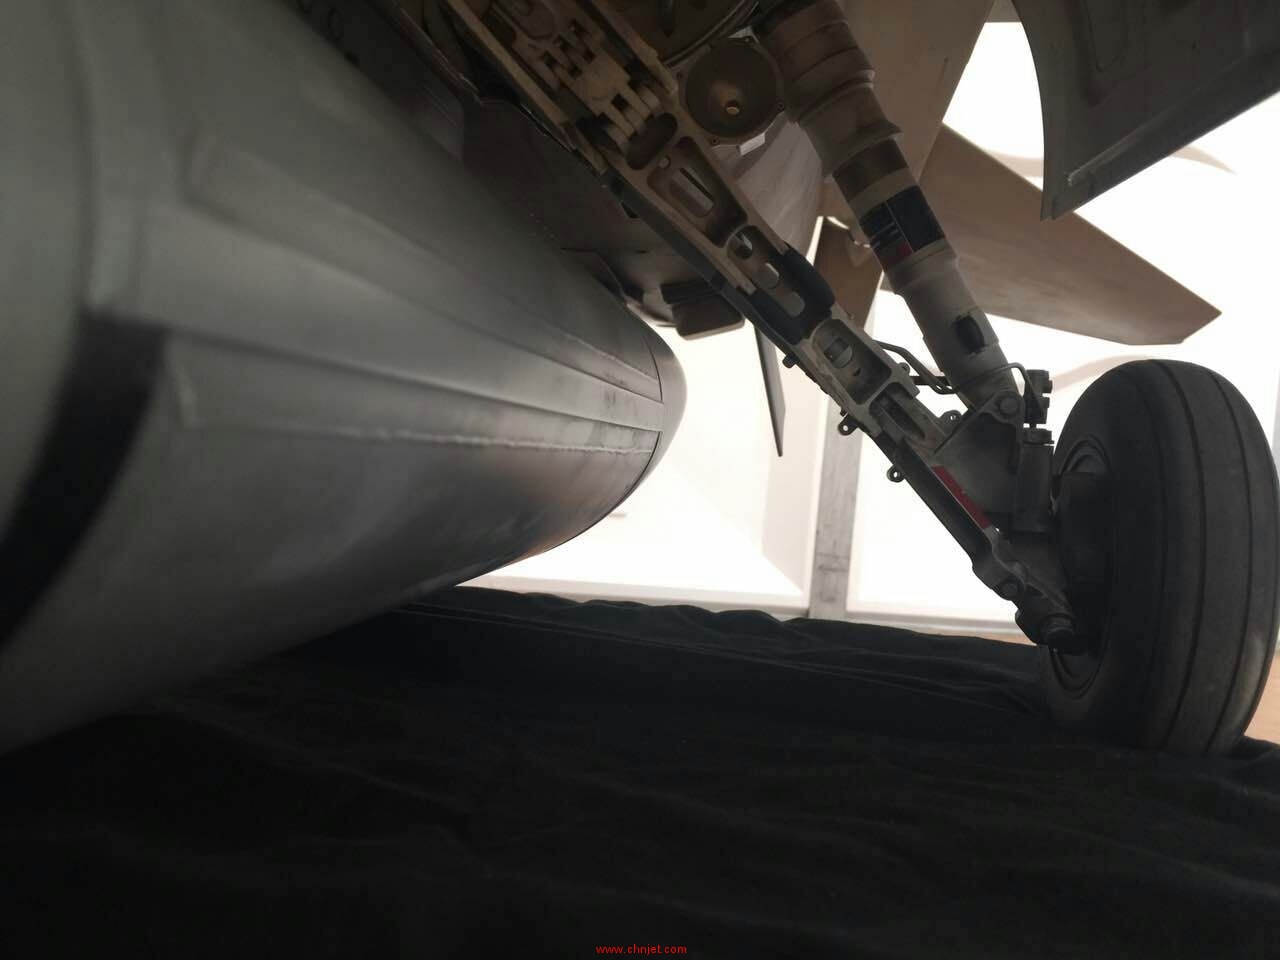 仿真度极高的F16A